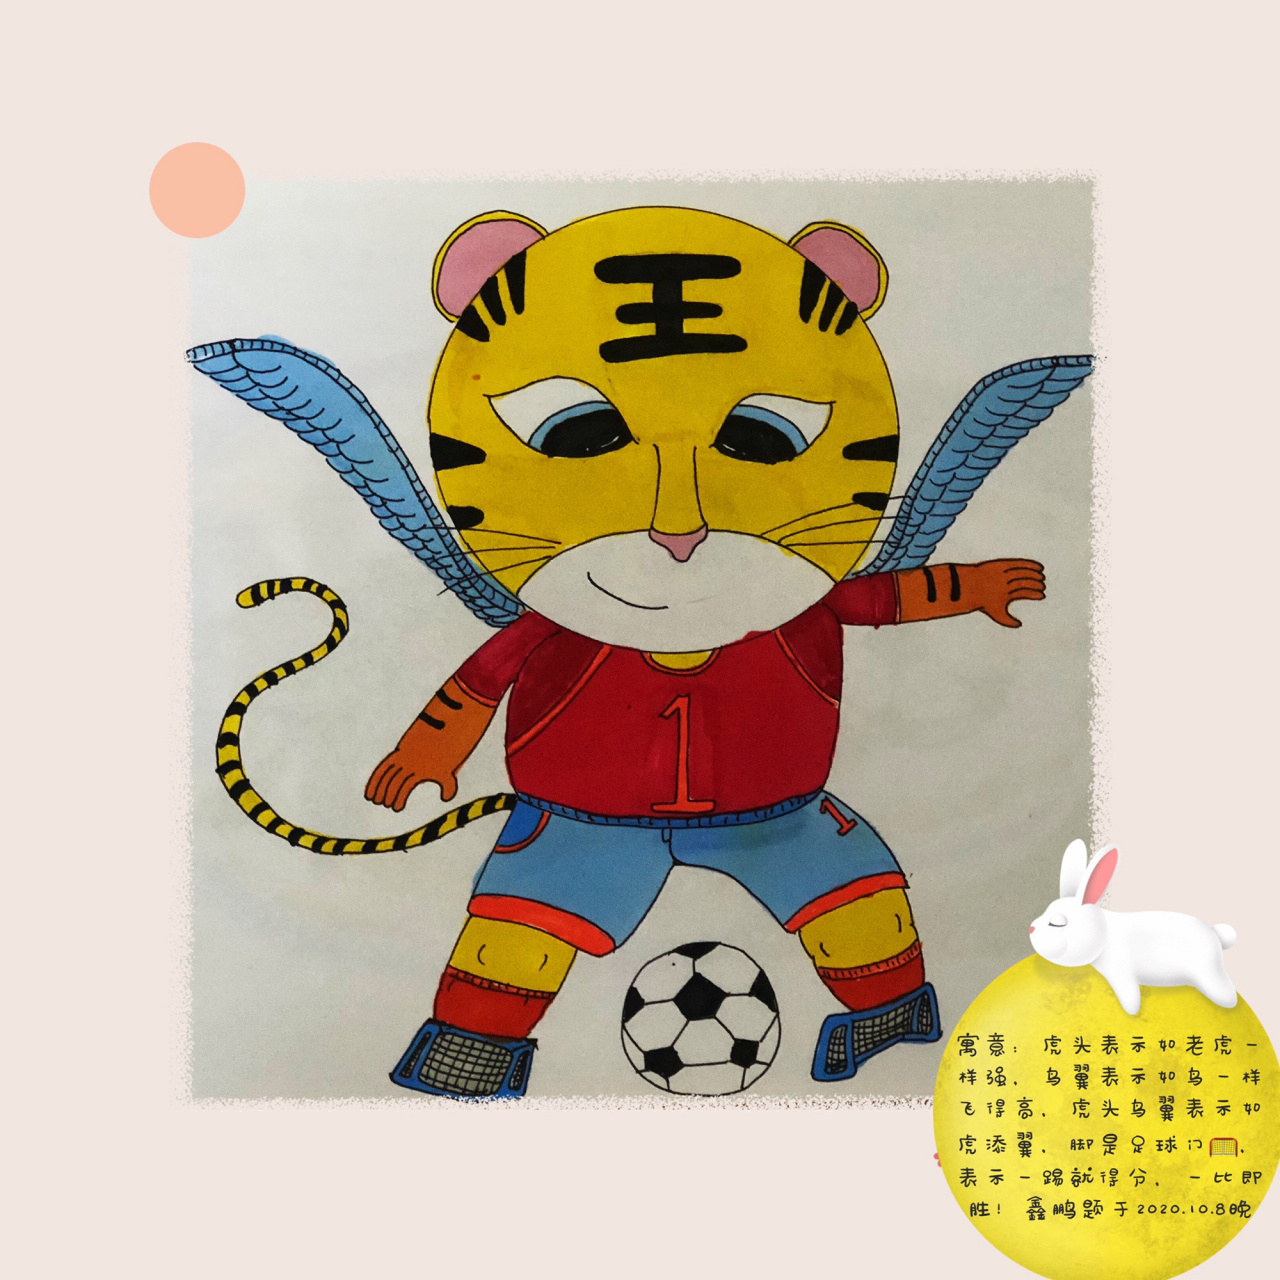 鑫鹏设计的足球吉祥物和足球队徽